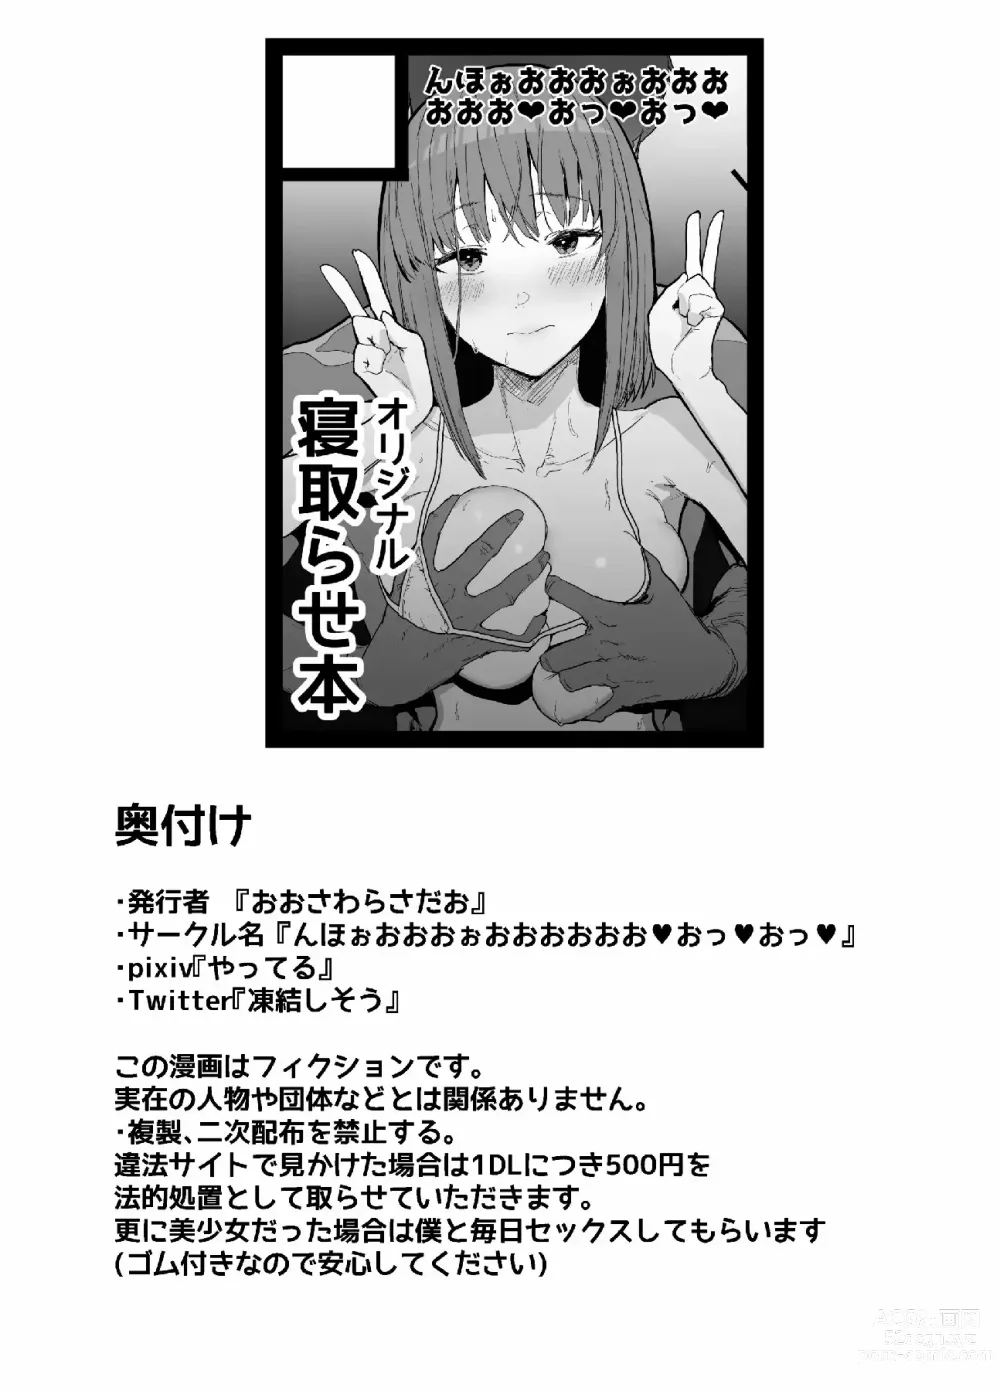 Page 73 of doujinshi ネトラセクラブ